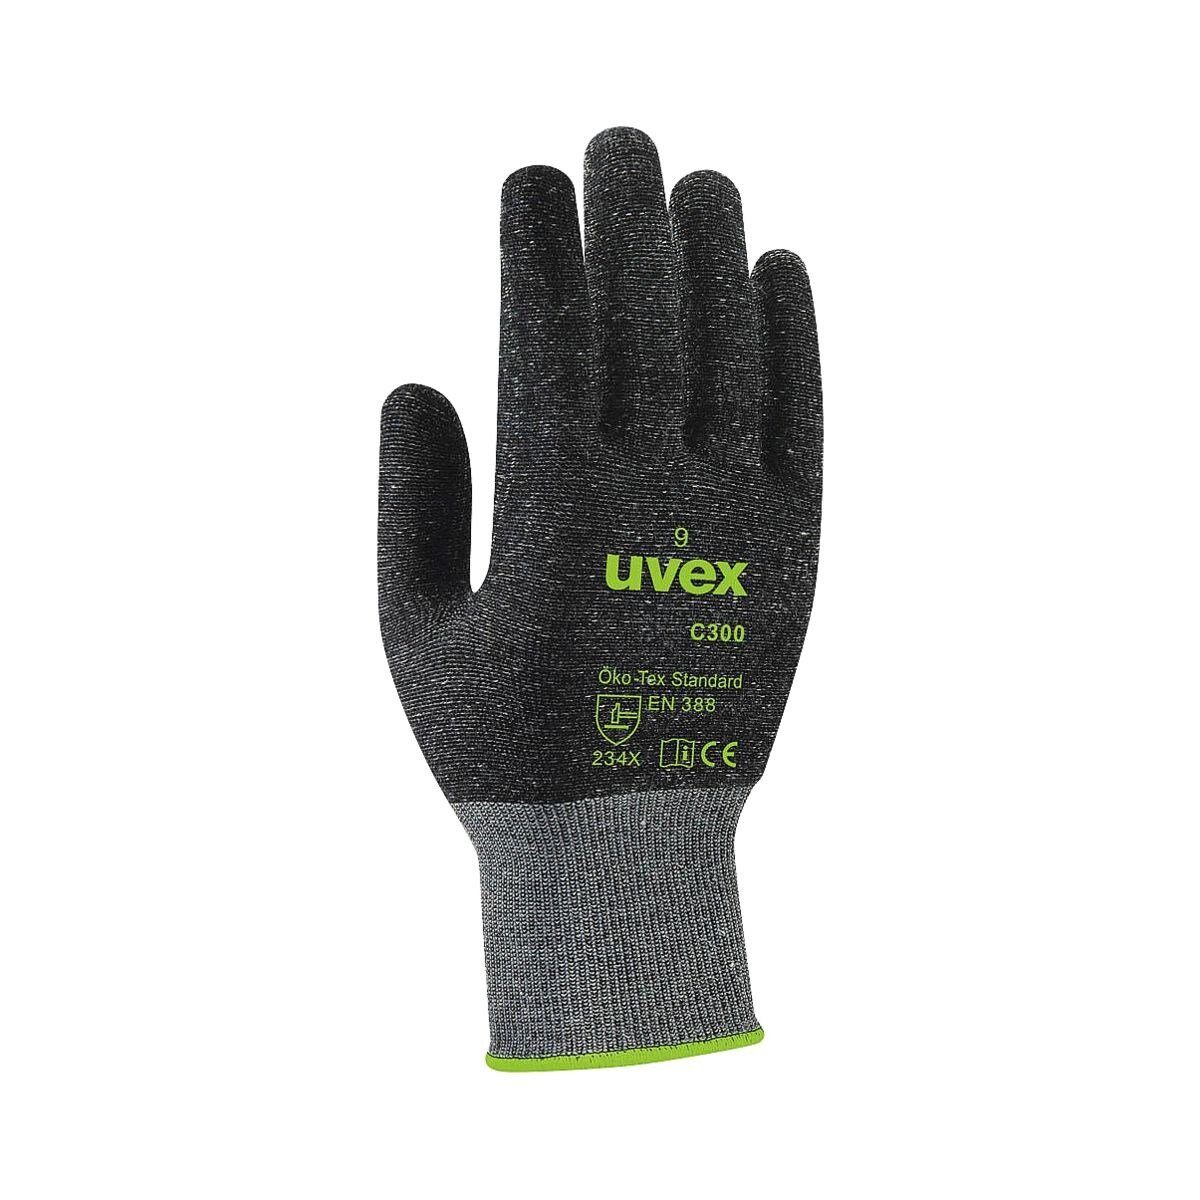 Uvex mit dry Technology TwinFlex® Größe C300 Schnittschutzhandschuhe uvex Bamboo 8,